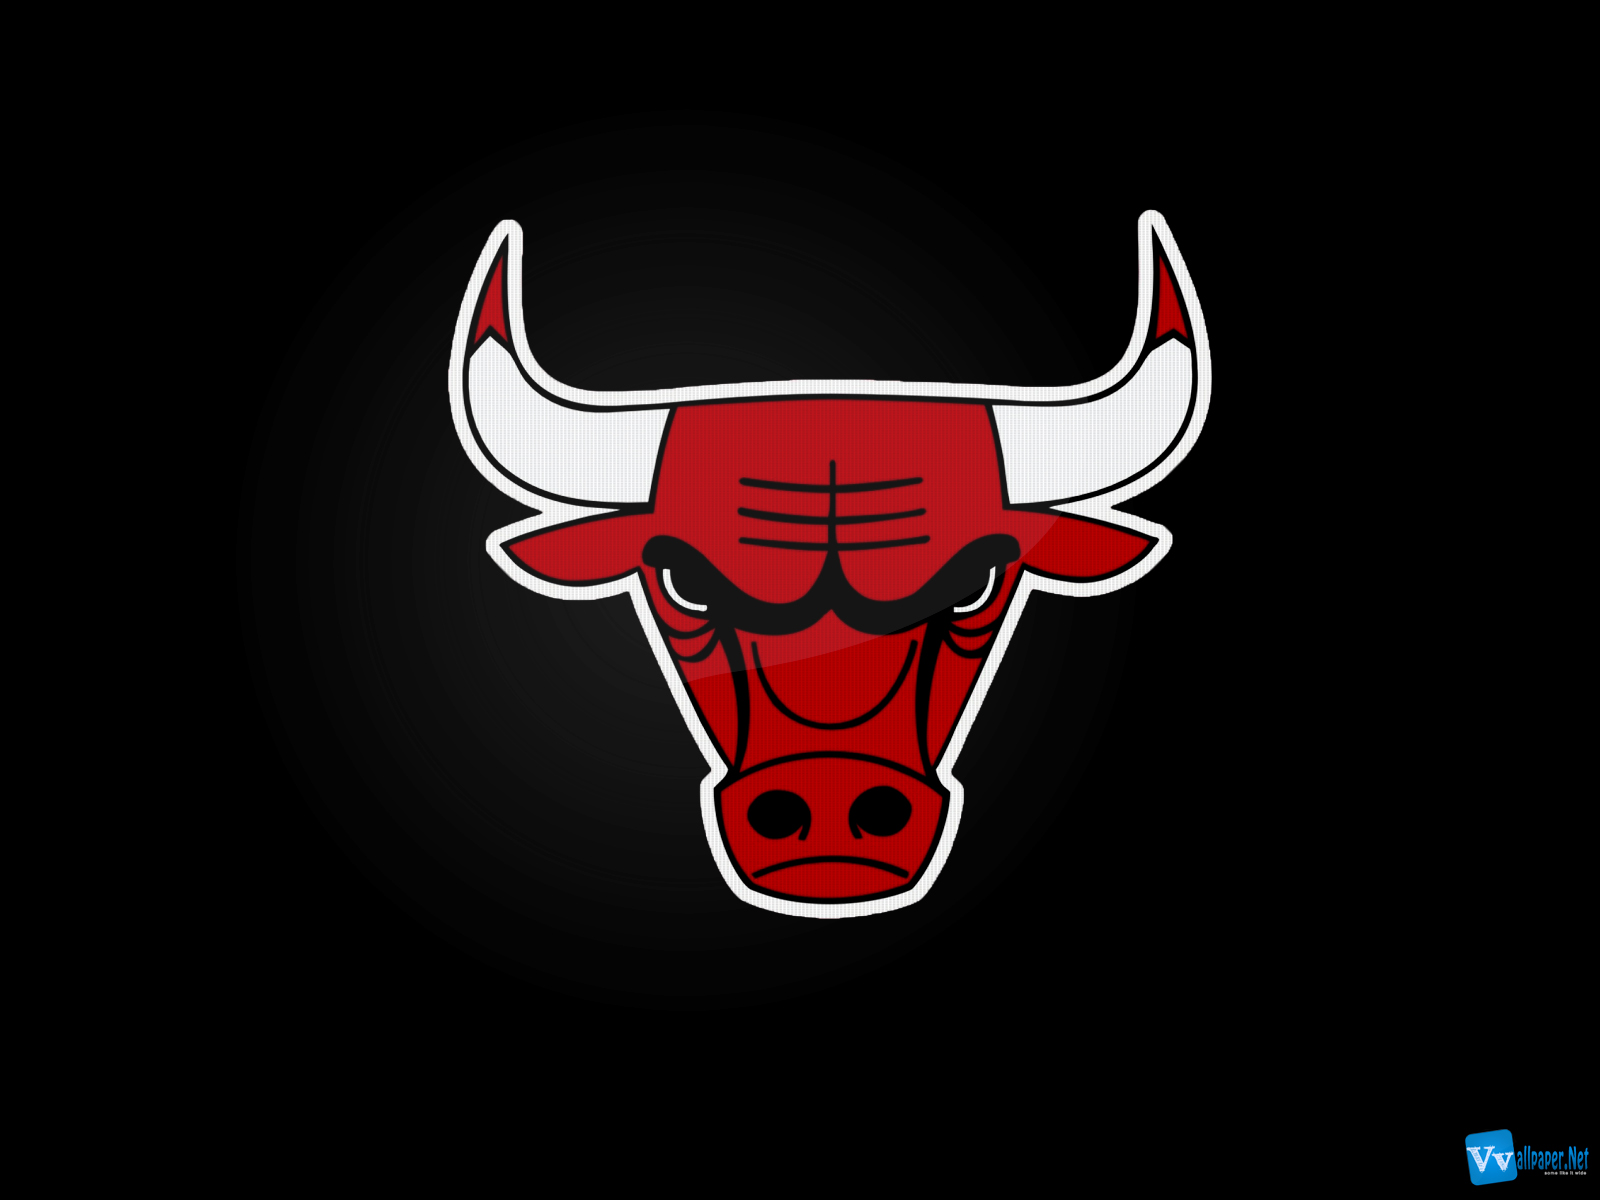 Gallery For gt Bulls Basketball Logo